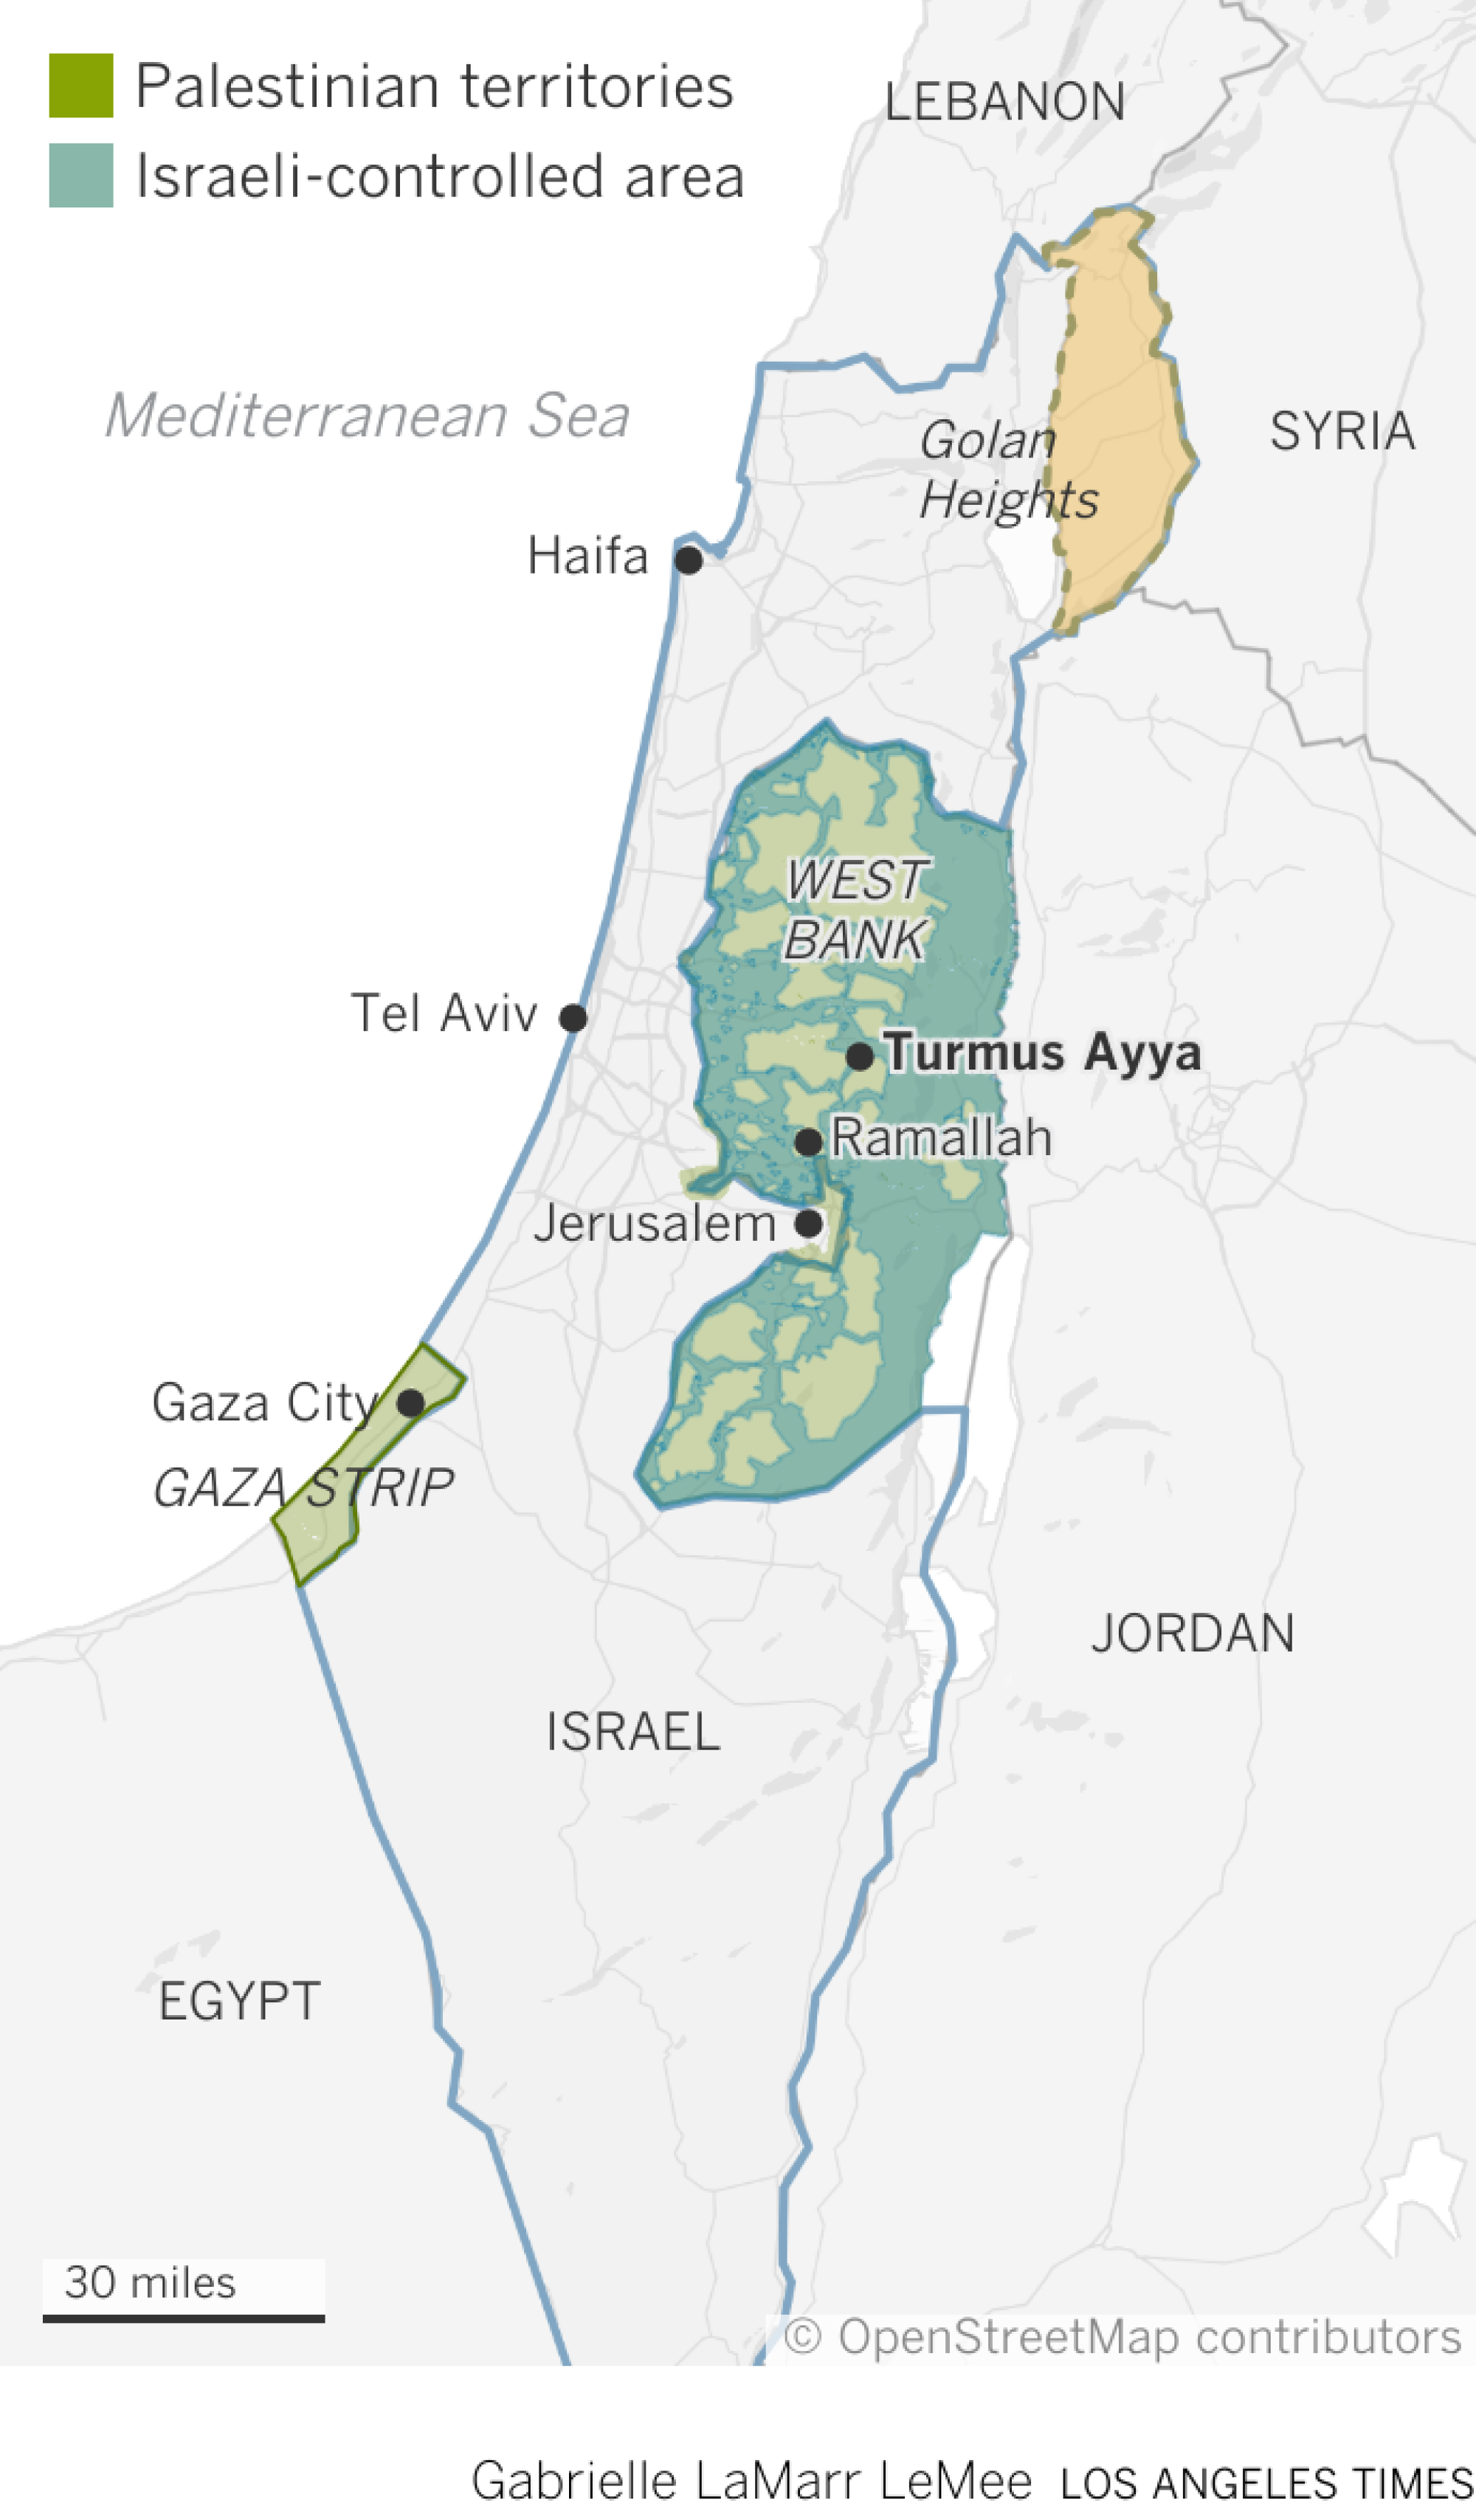 地图显示巴勒斯坦西岸的图尔穆斯·阿亚 (Turmus Ayya) 与以色列、巴勒斯坦领土和戈兰高地的关系。 